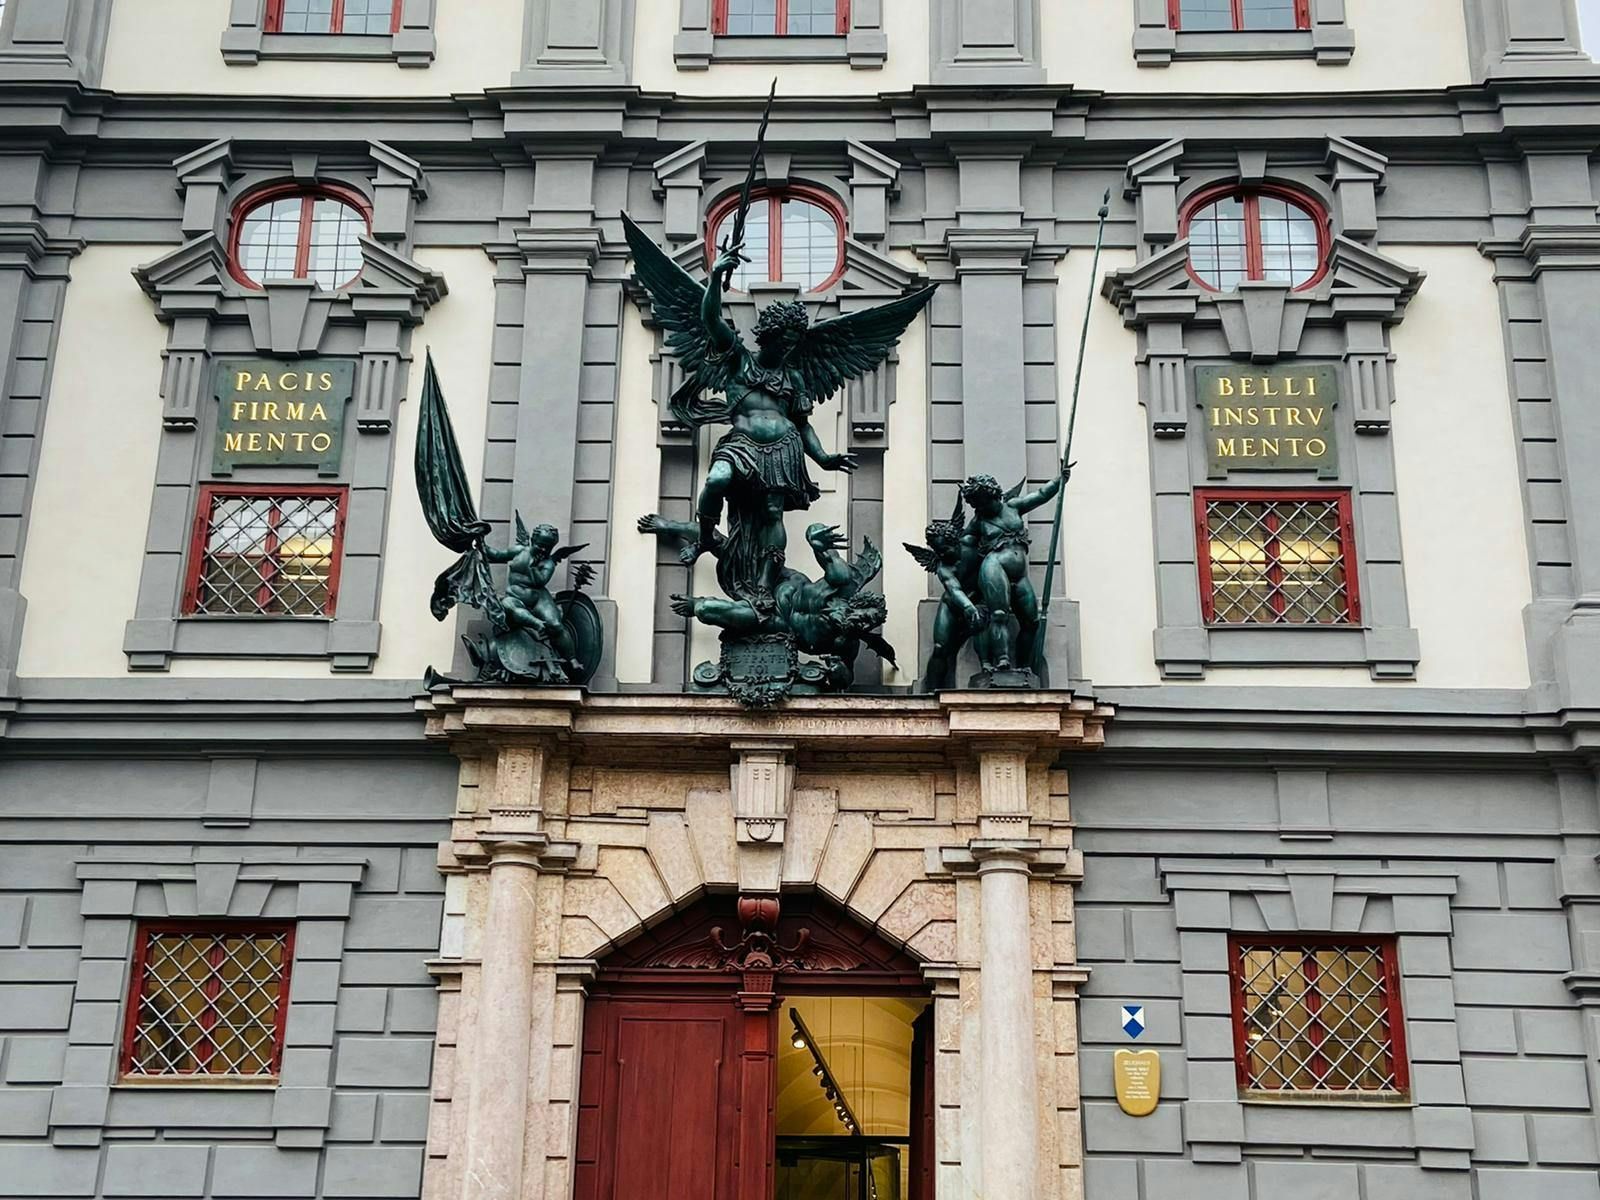 Imagen del tour: Recorrido por la ciudad de Augsburgo sobre Fugger, Medici y el arte renacentista